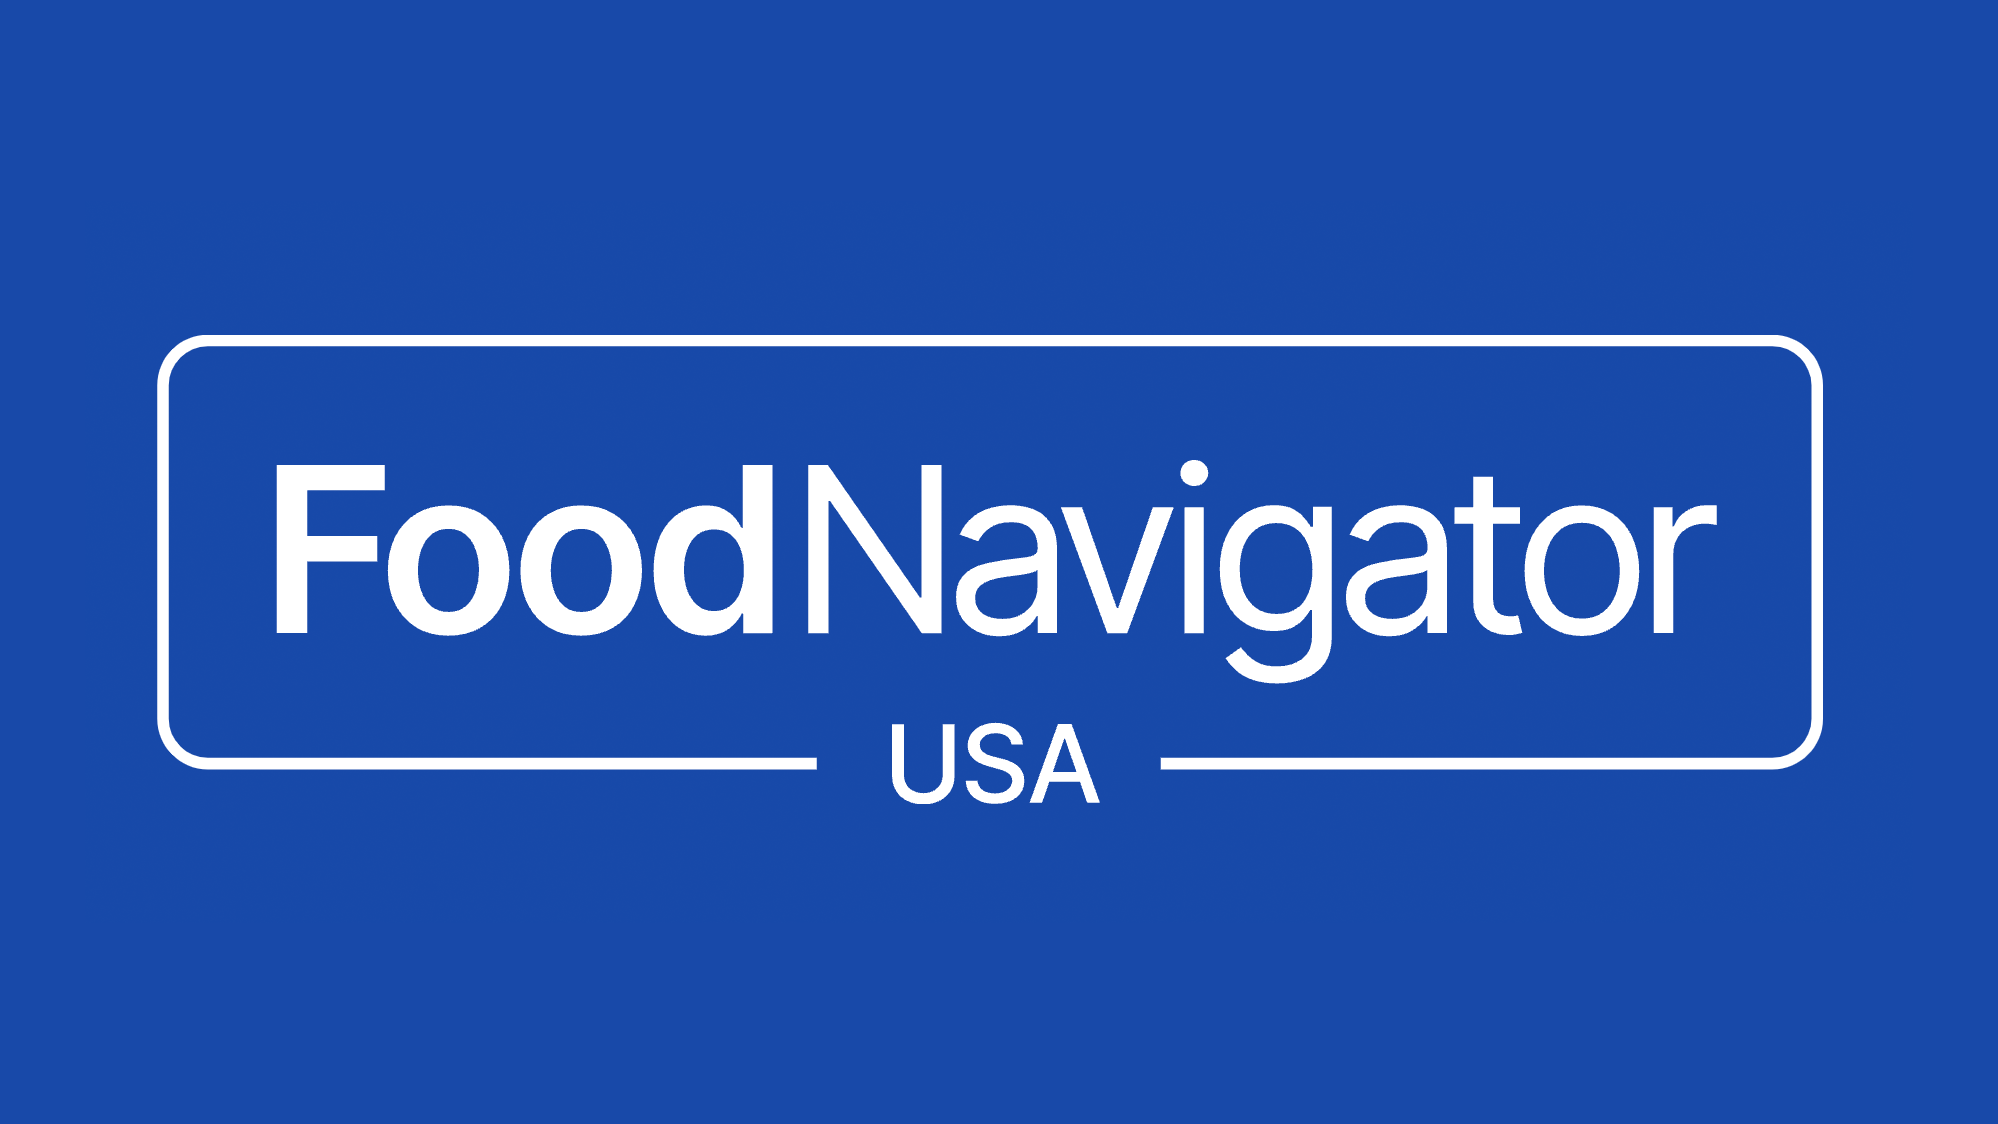 Food Navigator USA